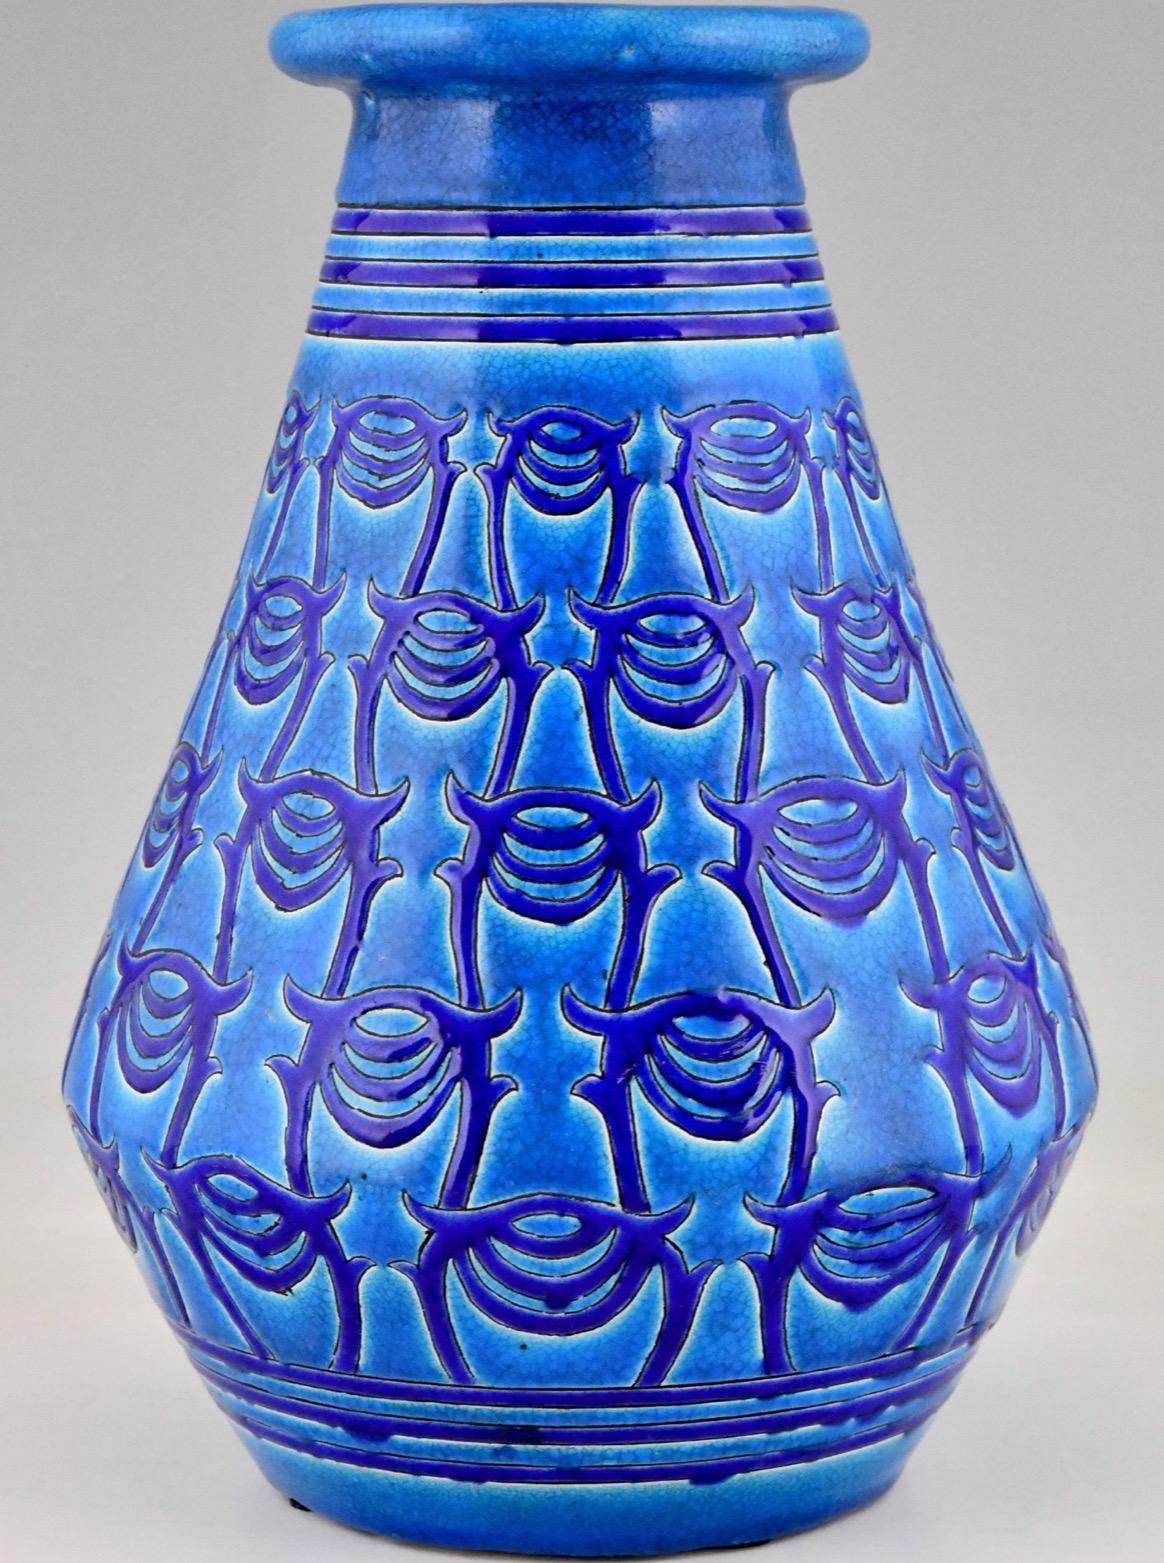 Blaue Art Déco-Vase, aus Keramik. Atelier Primavera, Longwy.  Frankreich, 1927. Diese Vase wurde im Jahr 1919 entworfen.
